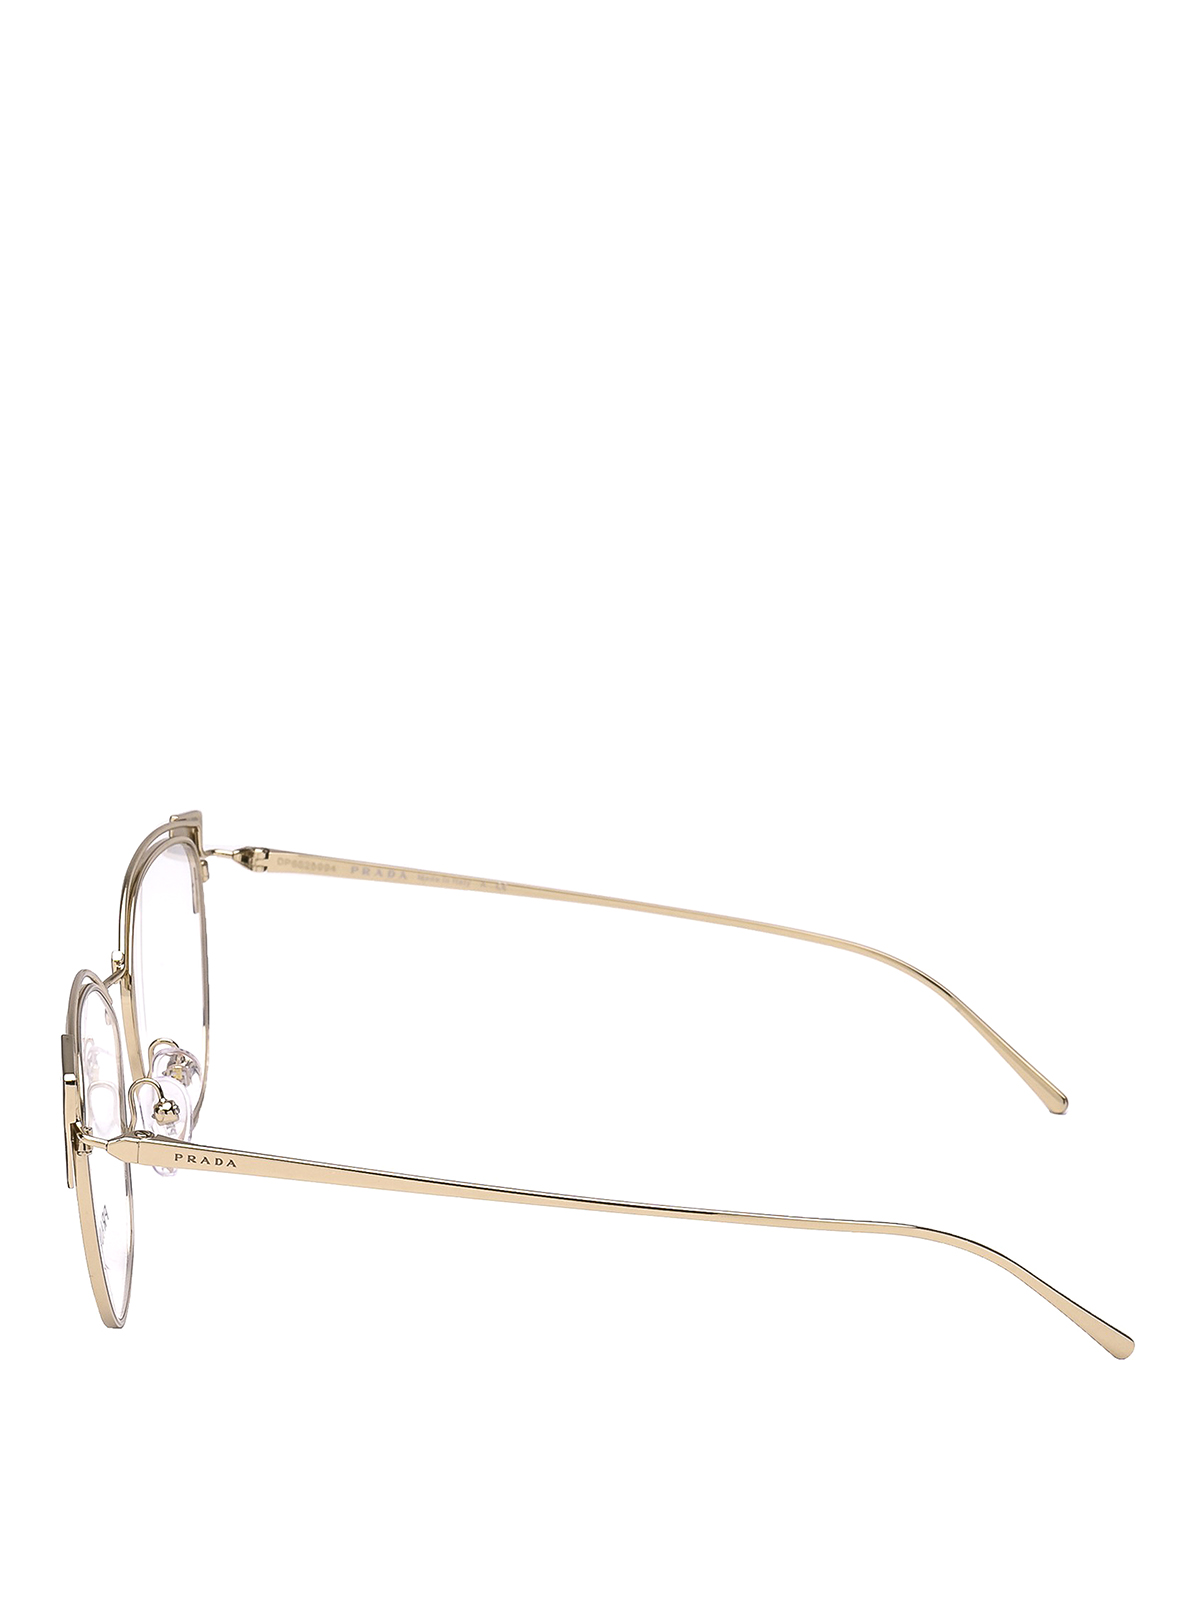 prada metal eyeglasses